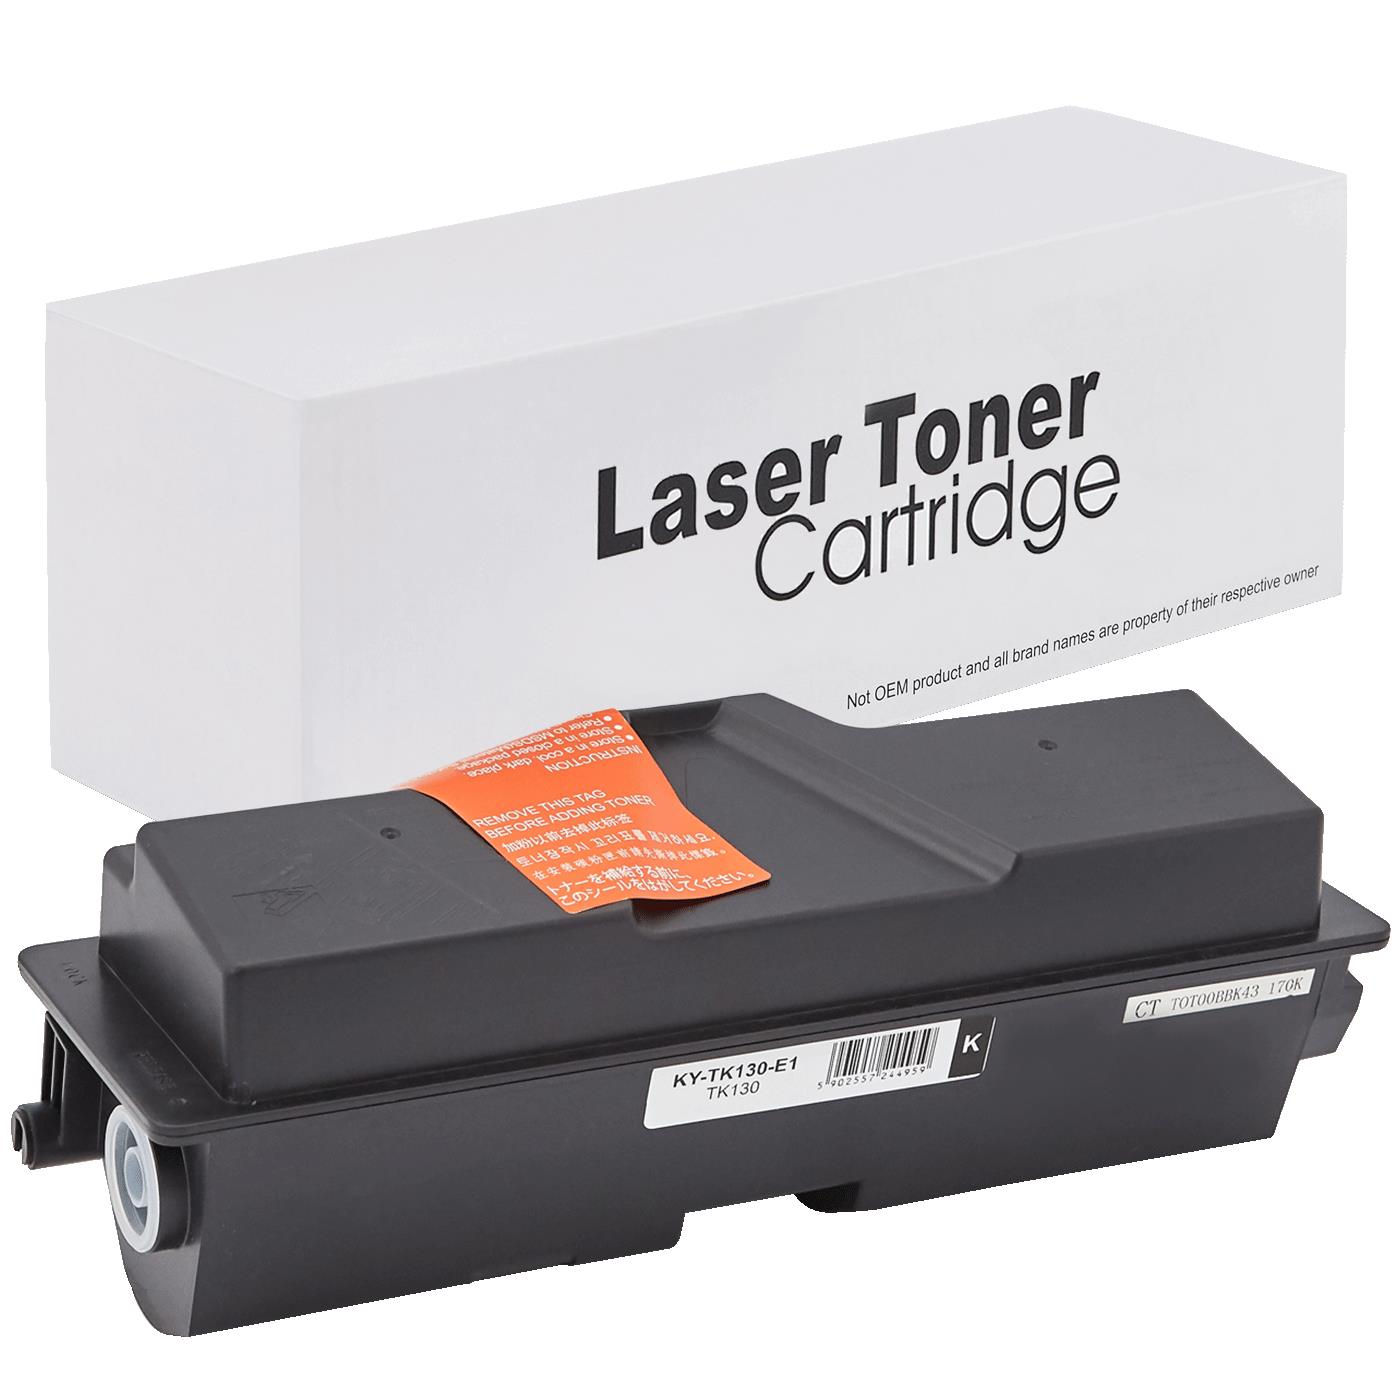 съвместима тонер касета за принтери и печатащи устройства на Kyocera Mita FS 1300N Toner KY-TK130 | TK130. Ниски цени, прецизно изпълнение, високо качество.